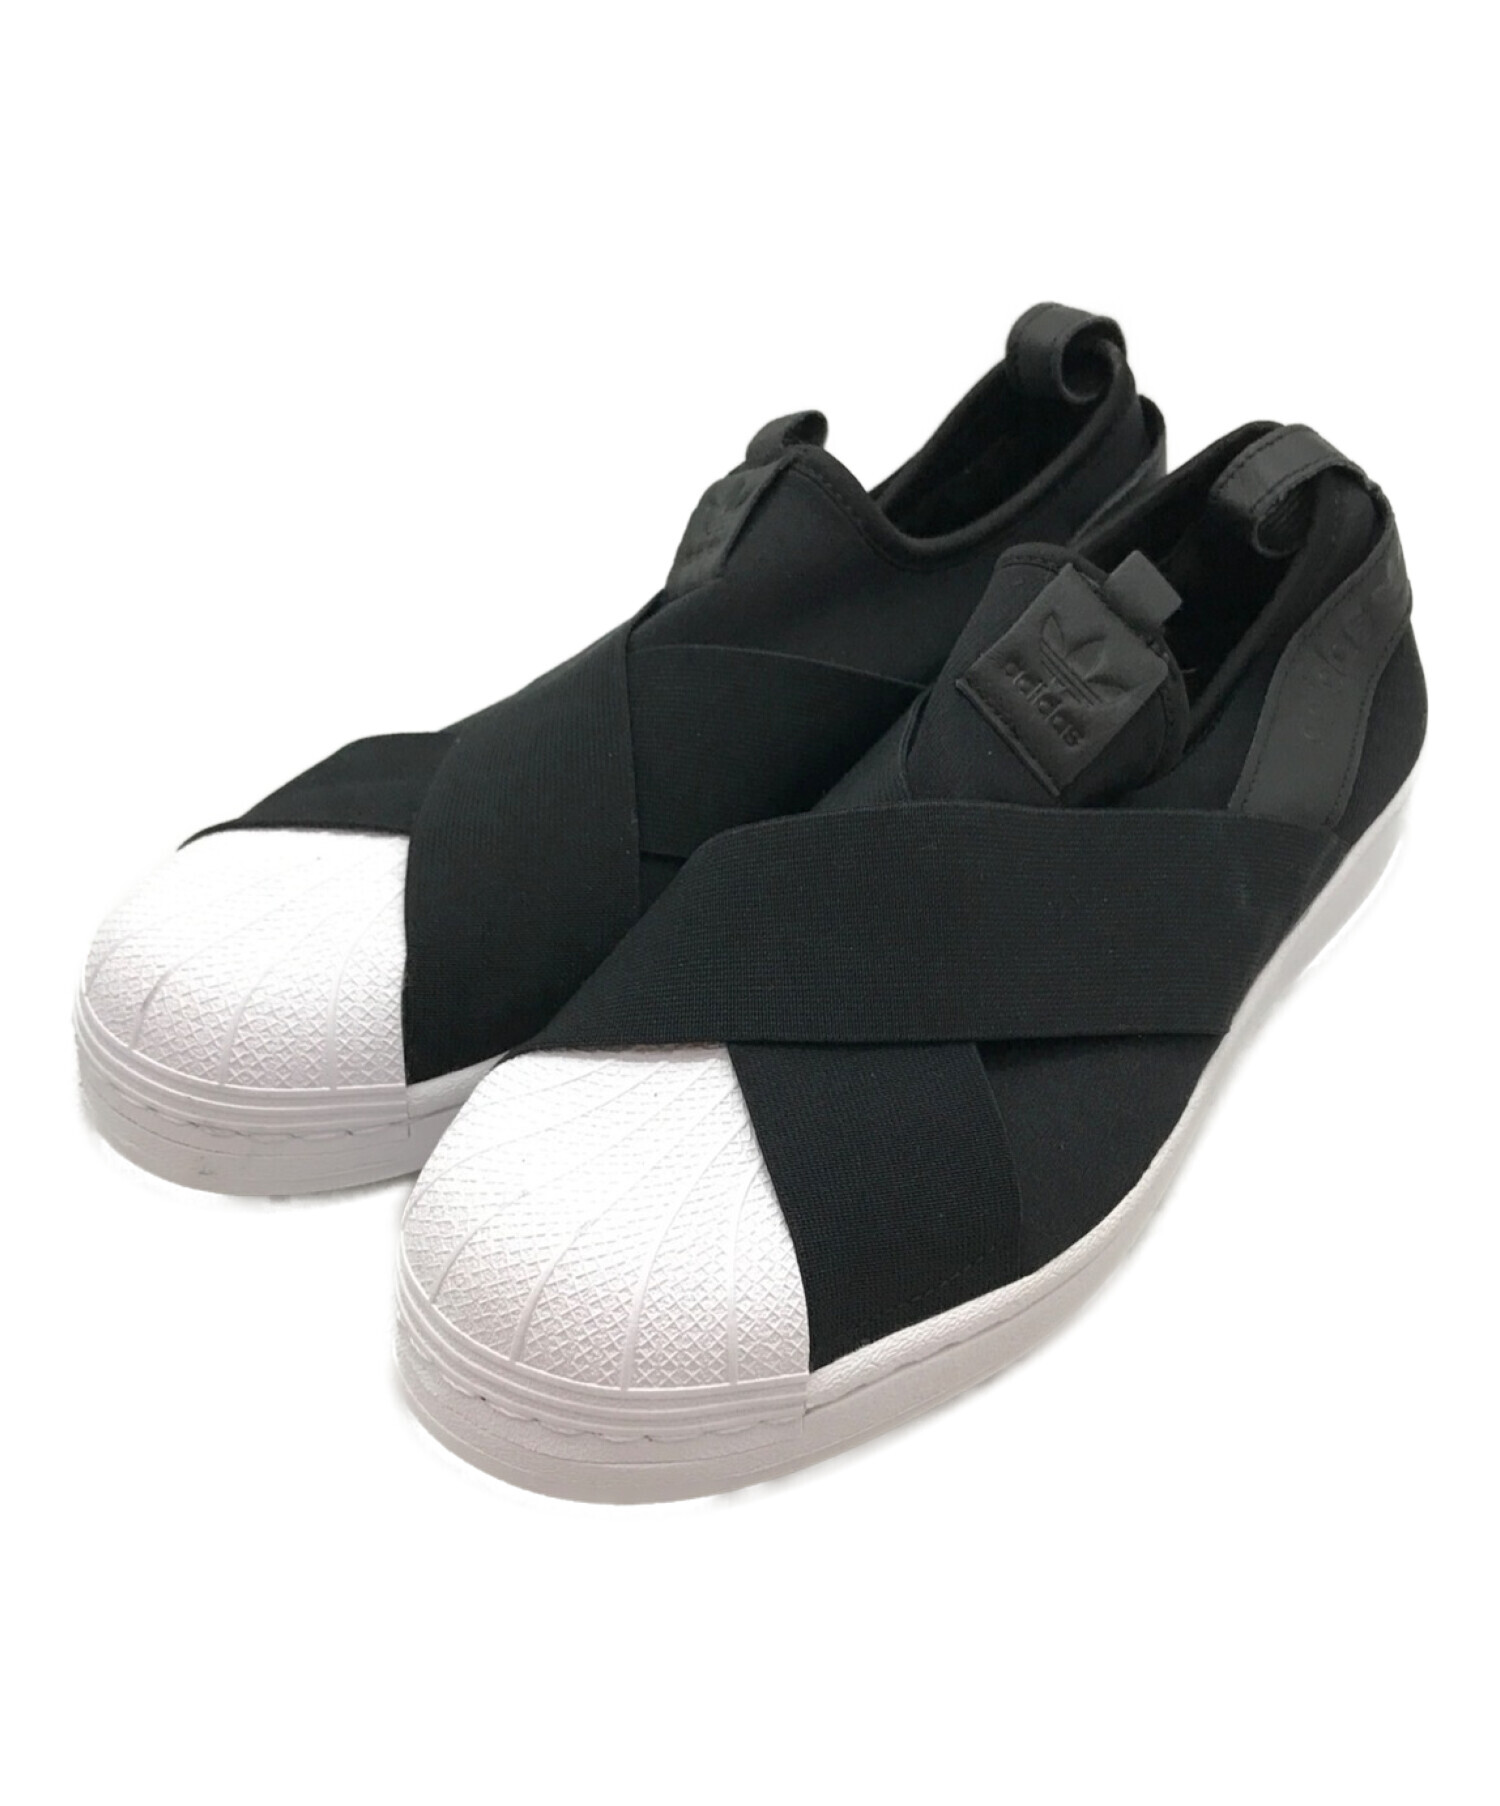 adidas (アディダス) Adidas SST Slip On / スーパースタースリッポン / ローカットスニーカー ブラック×ホワイト  サイズ:28cm